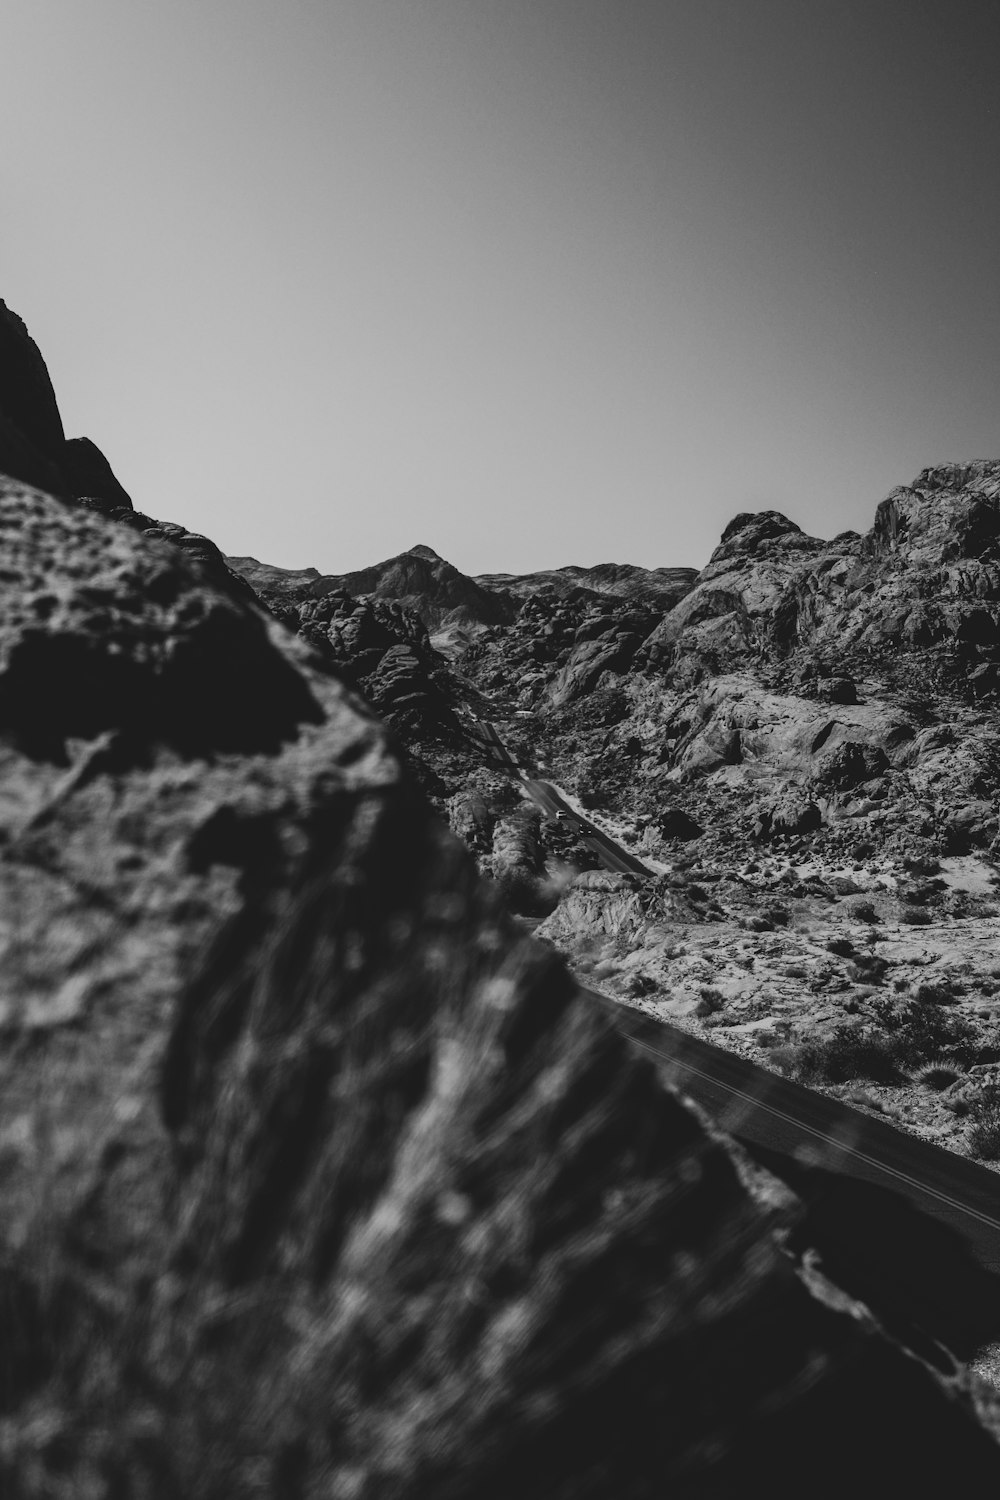 a train track going through a mountain